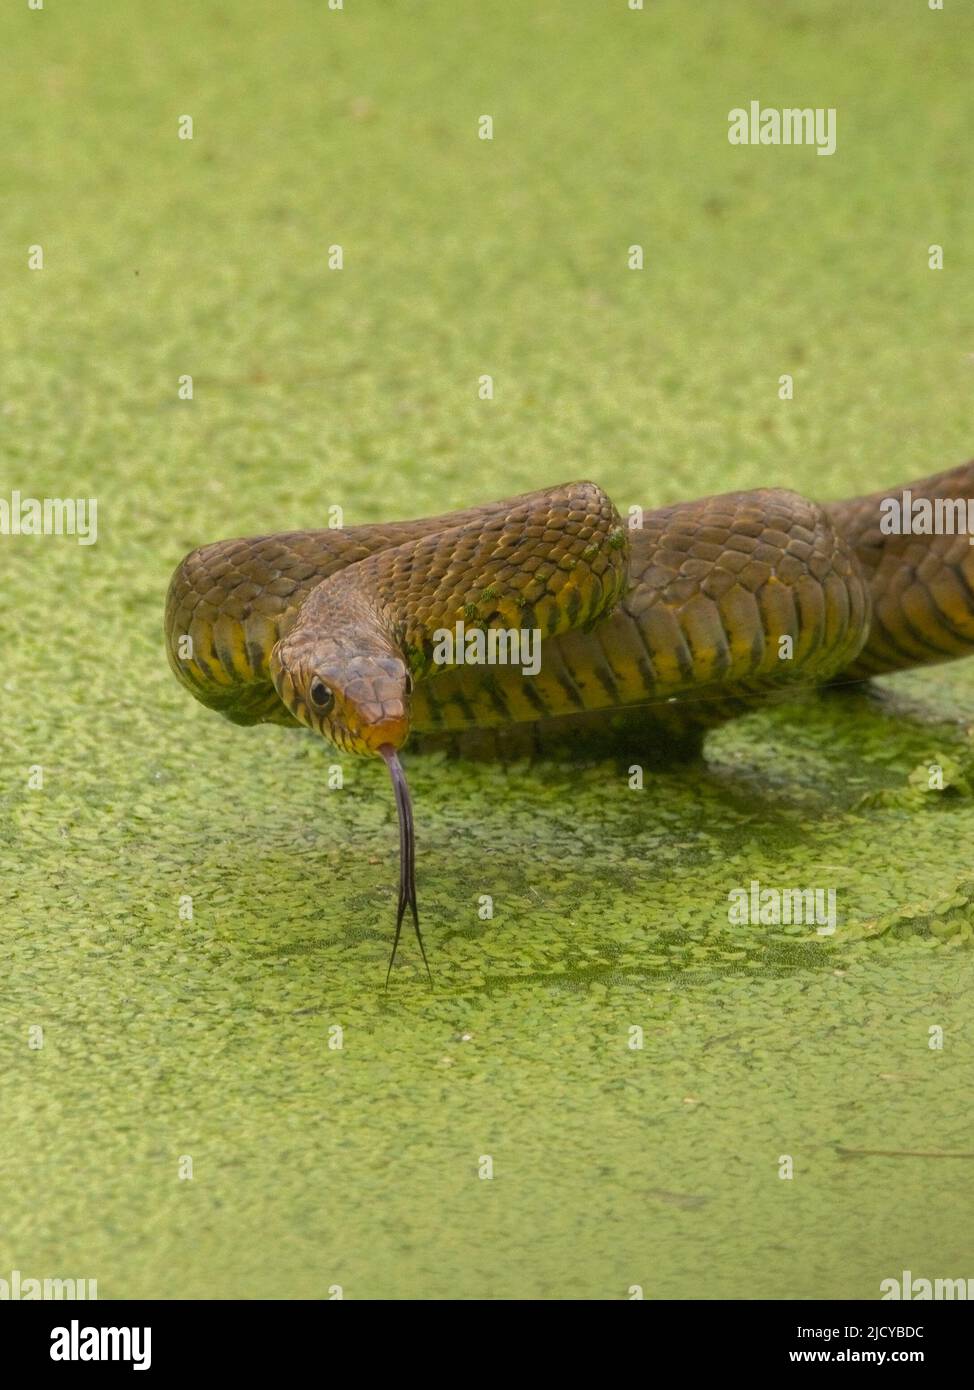 Indian Rat snake (Ptyas mucosa) Stock Photo